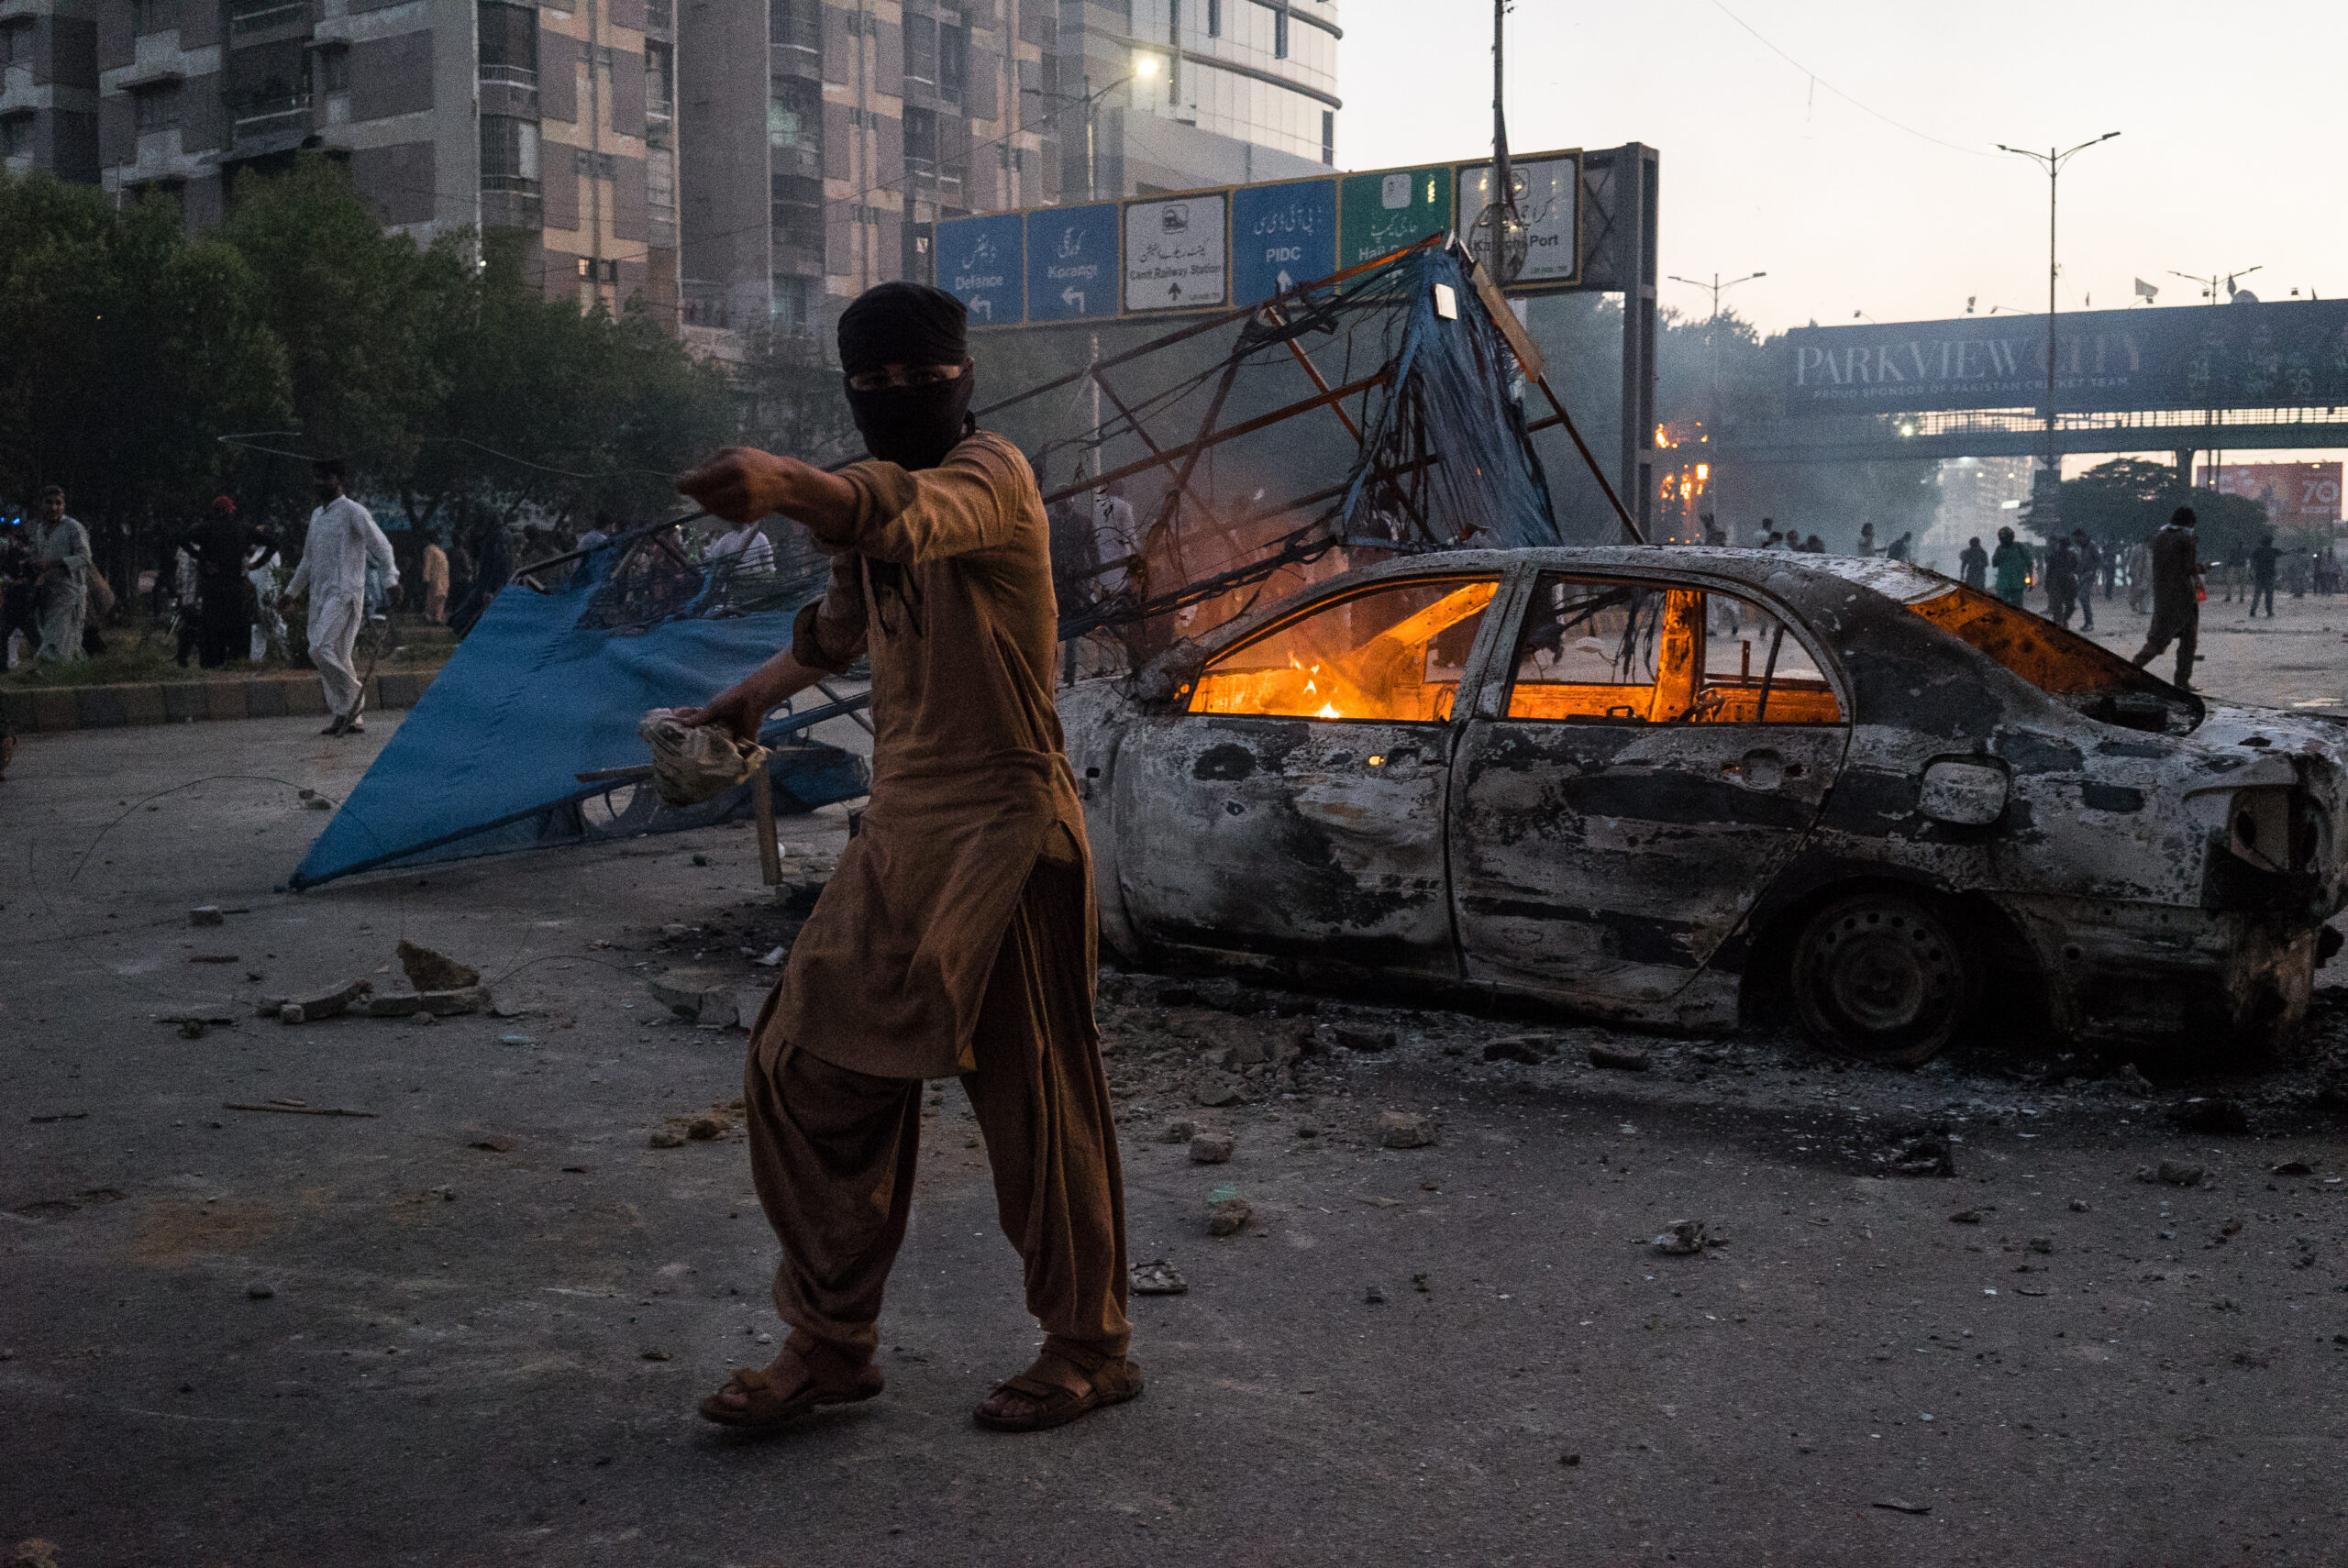 Un partidario del PTI delante de un vehículo incendiado por manifestantes, Karachi, 9 de mayo. © Laurent Gayer